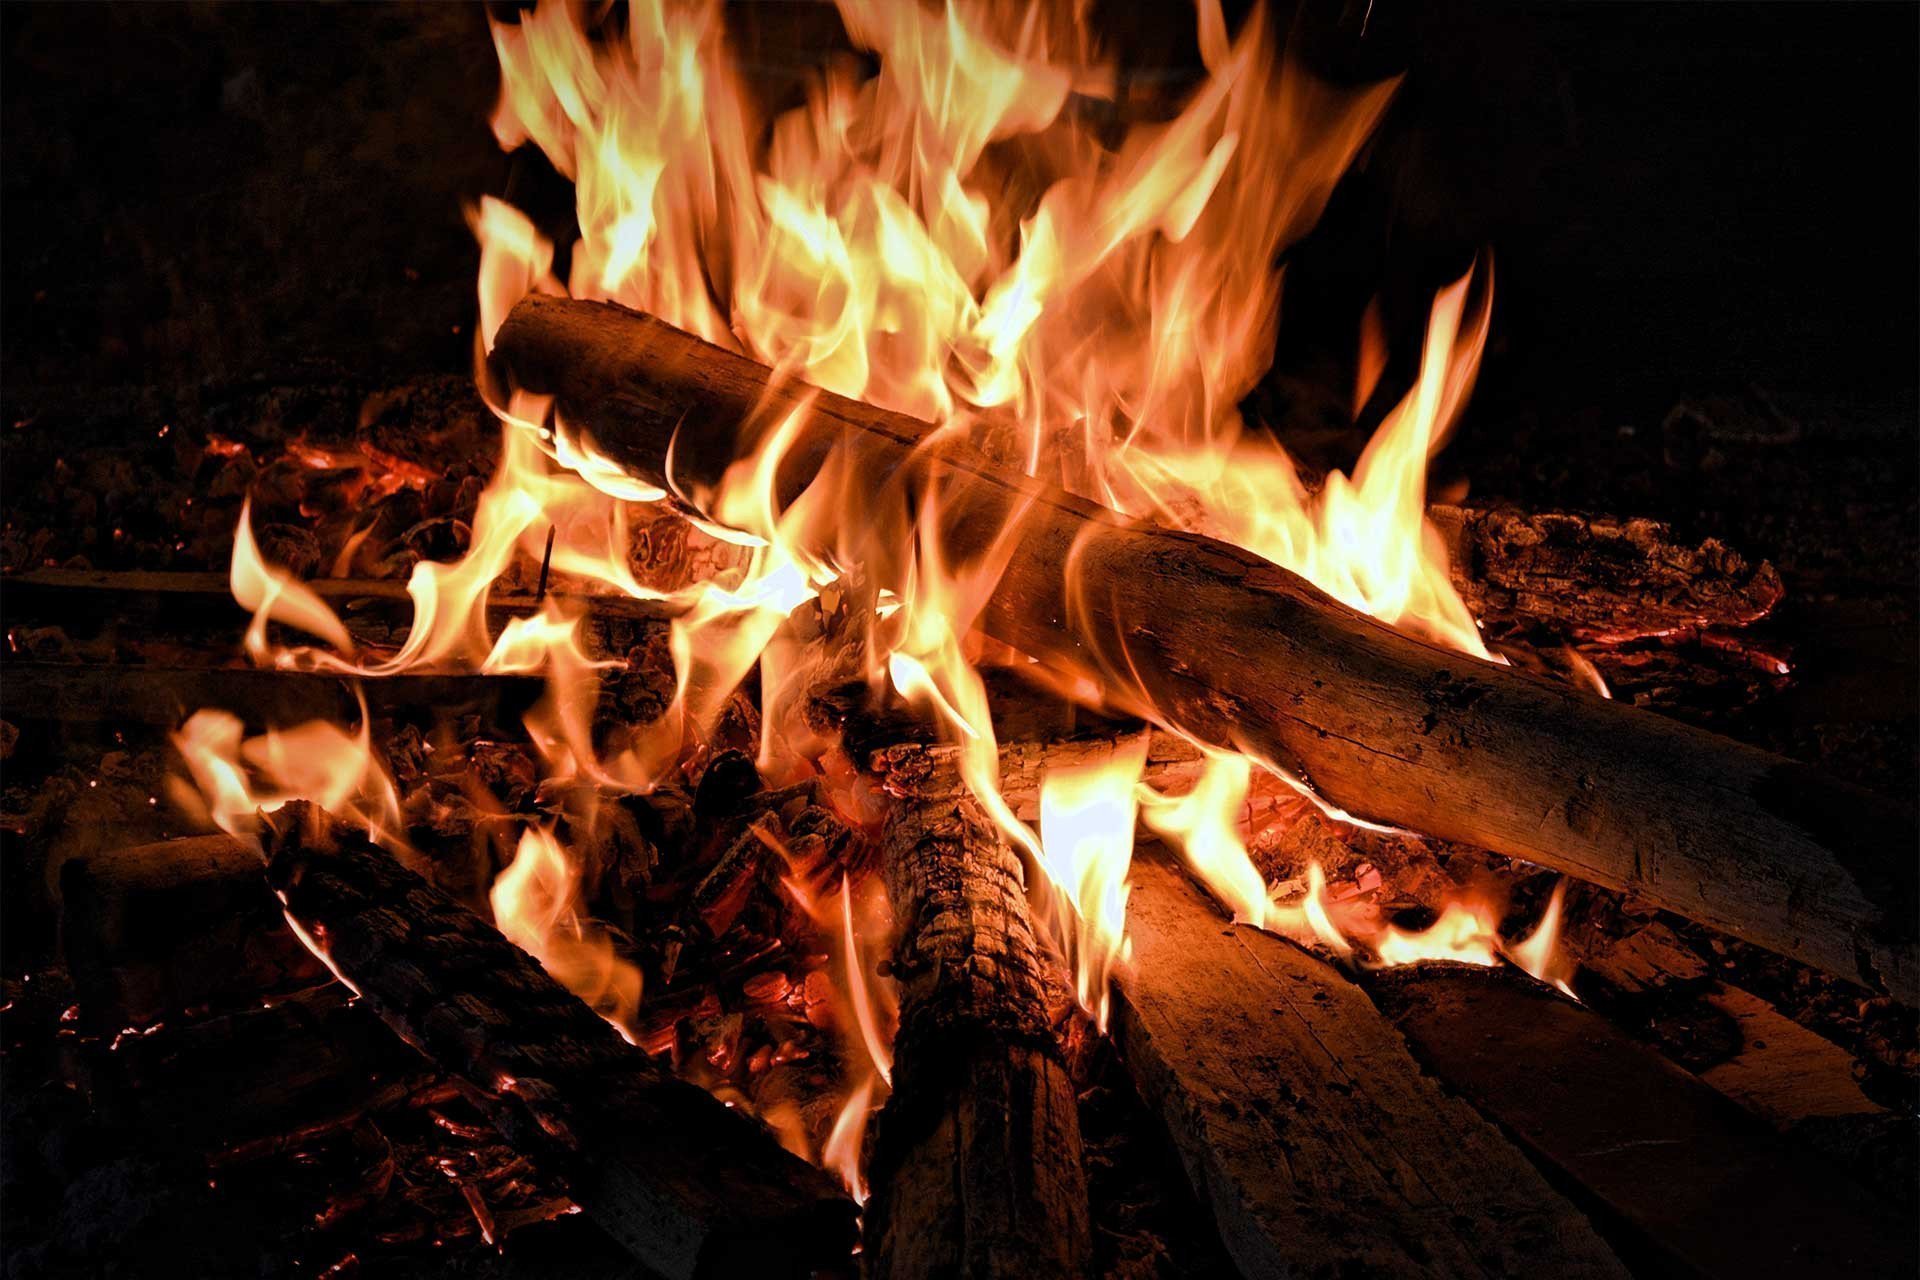 In 7 Schritten zum perfekten Lagerfeuer bis zu dem Löschen